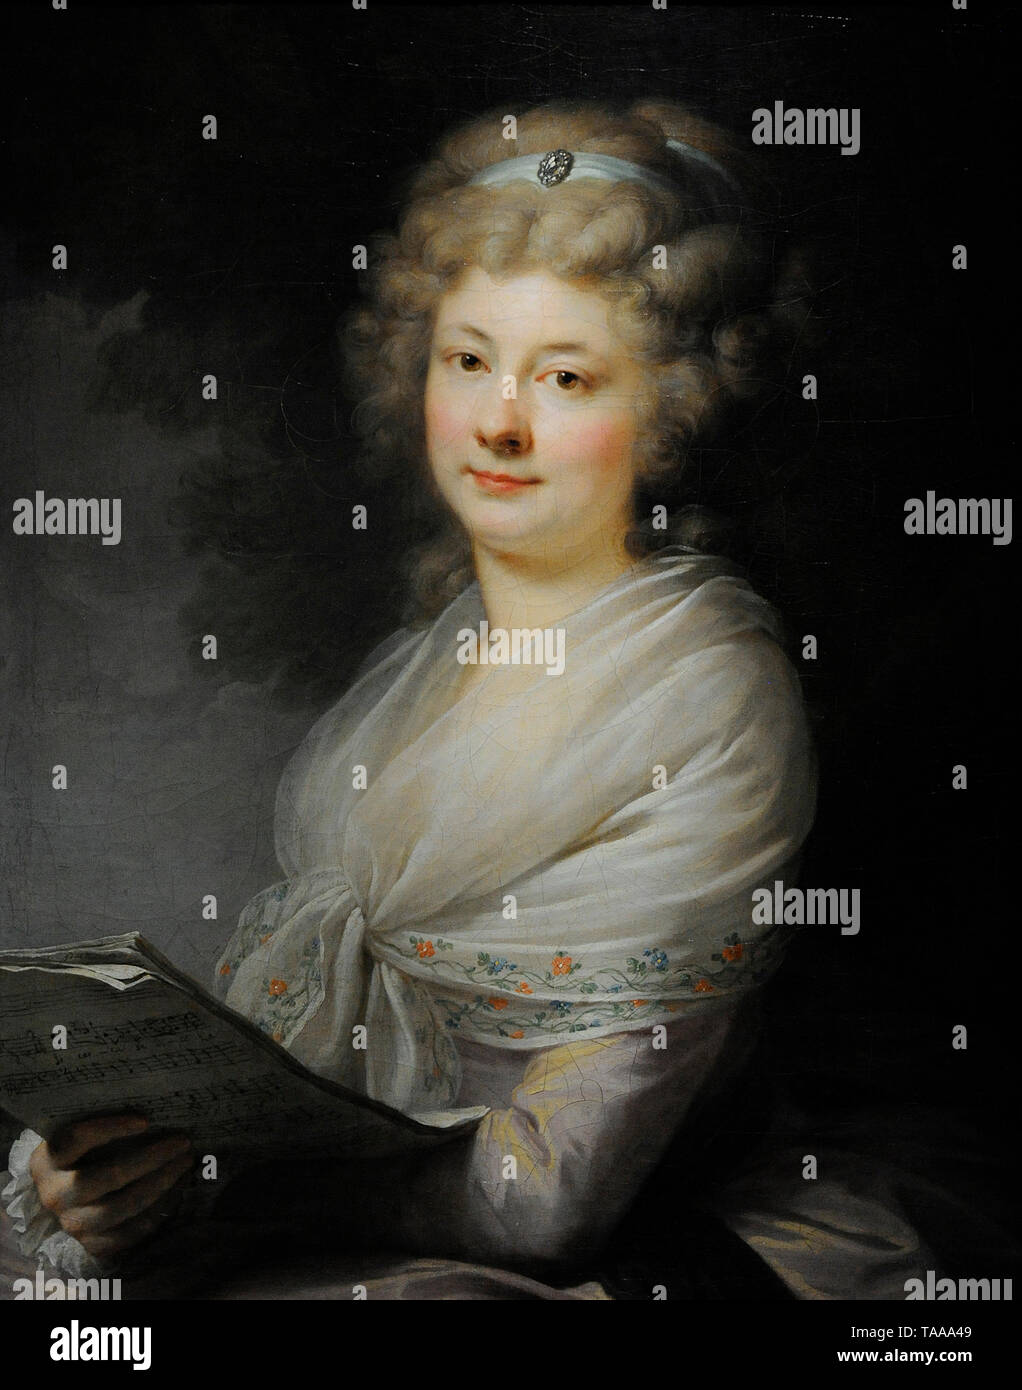 Giovanni Battista Lampi (1751-1830). Peintre italien. Portrait de Urszula Dembinska (Portrait d'une dame avec une partition de musique), ca. 1789. Musée national. Varsovie. La Pologne. Banque D'Images